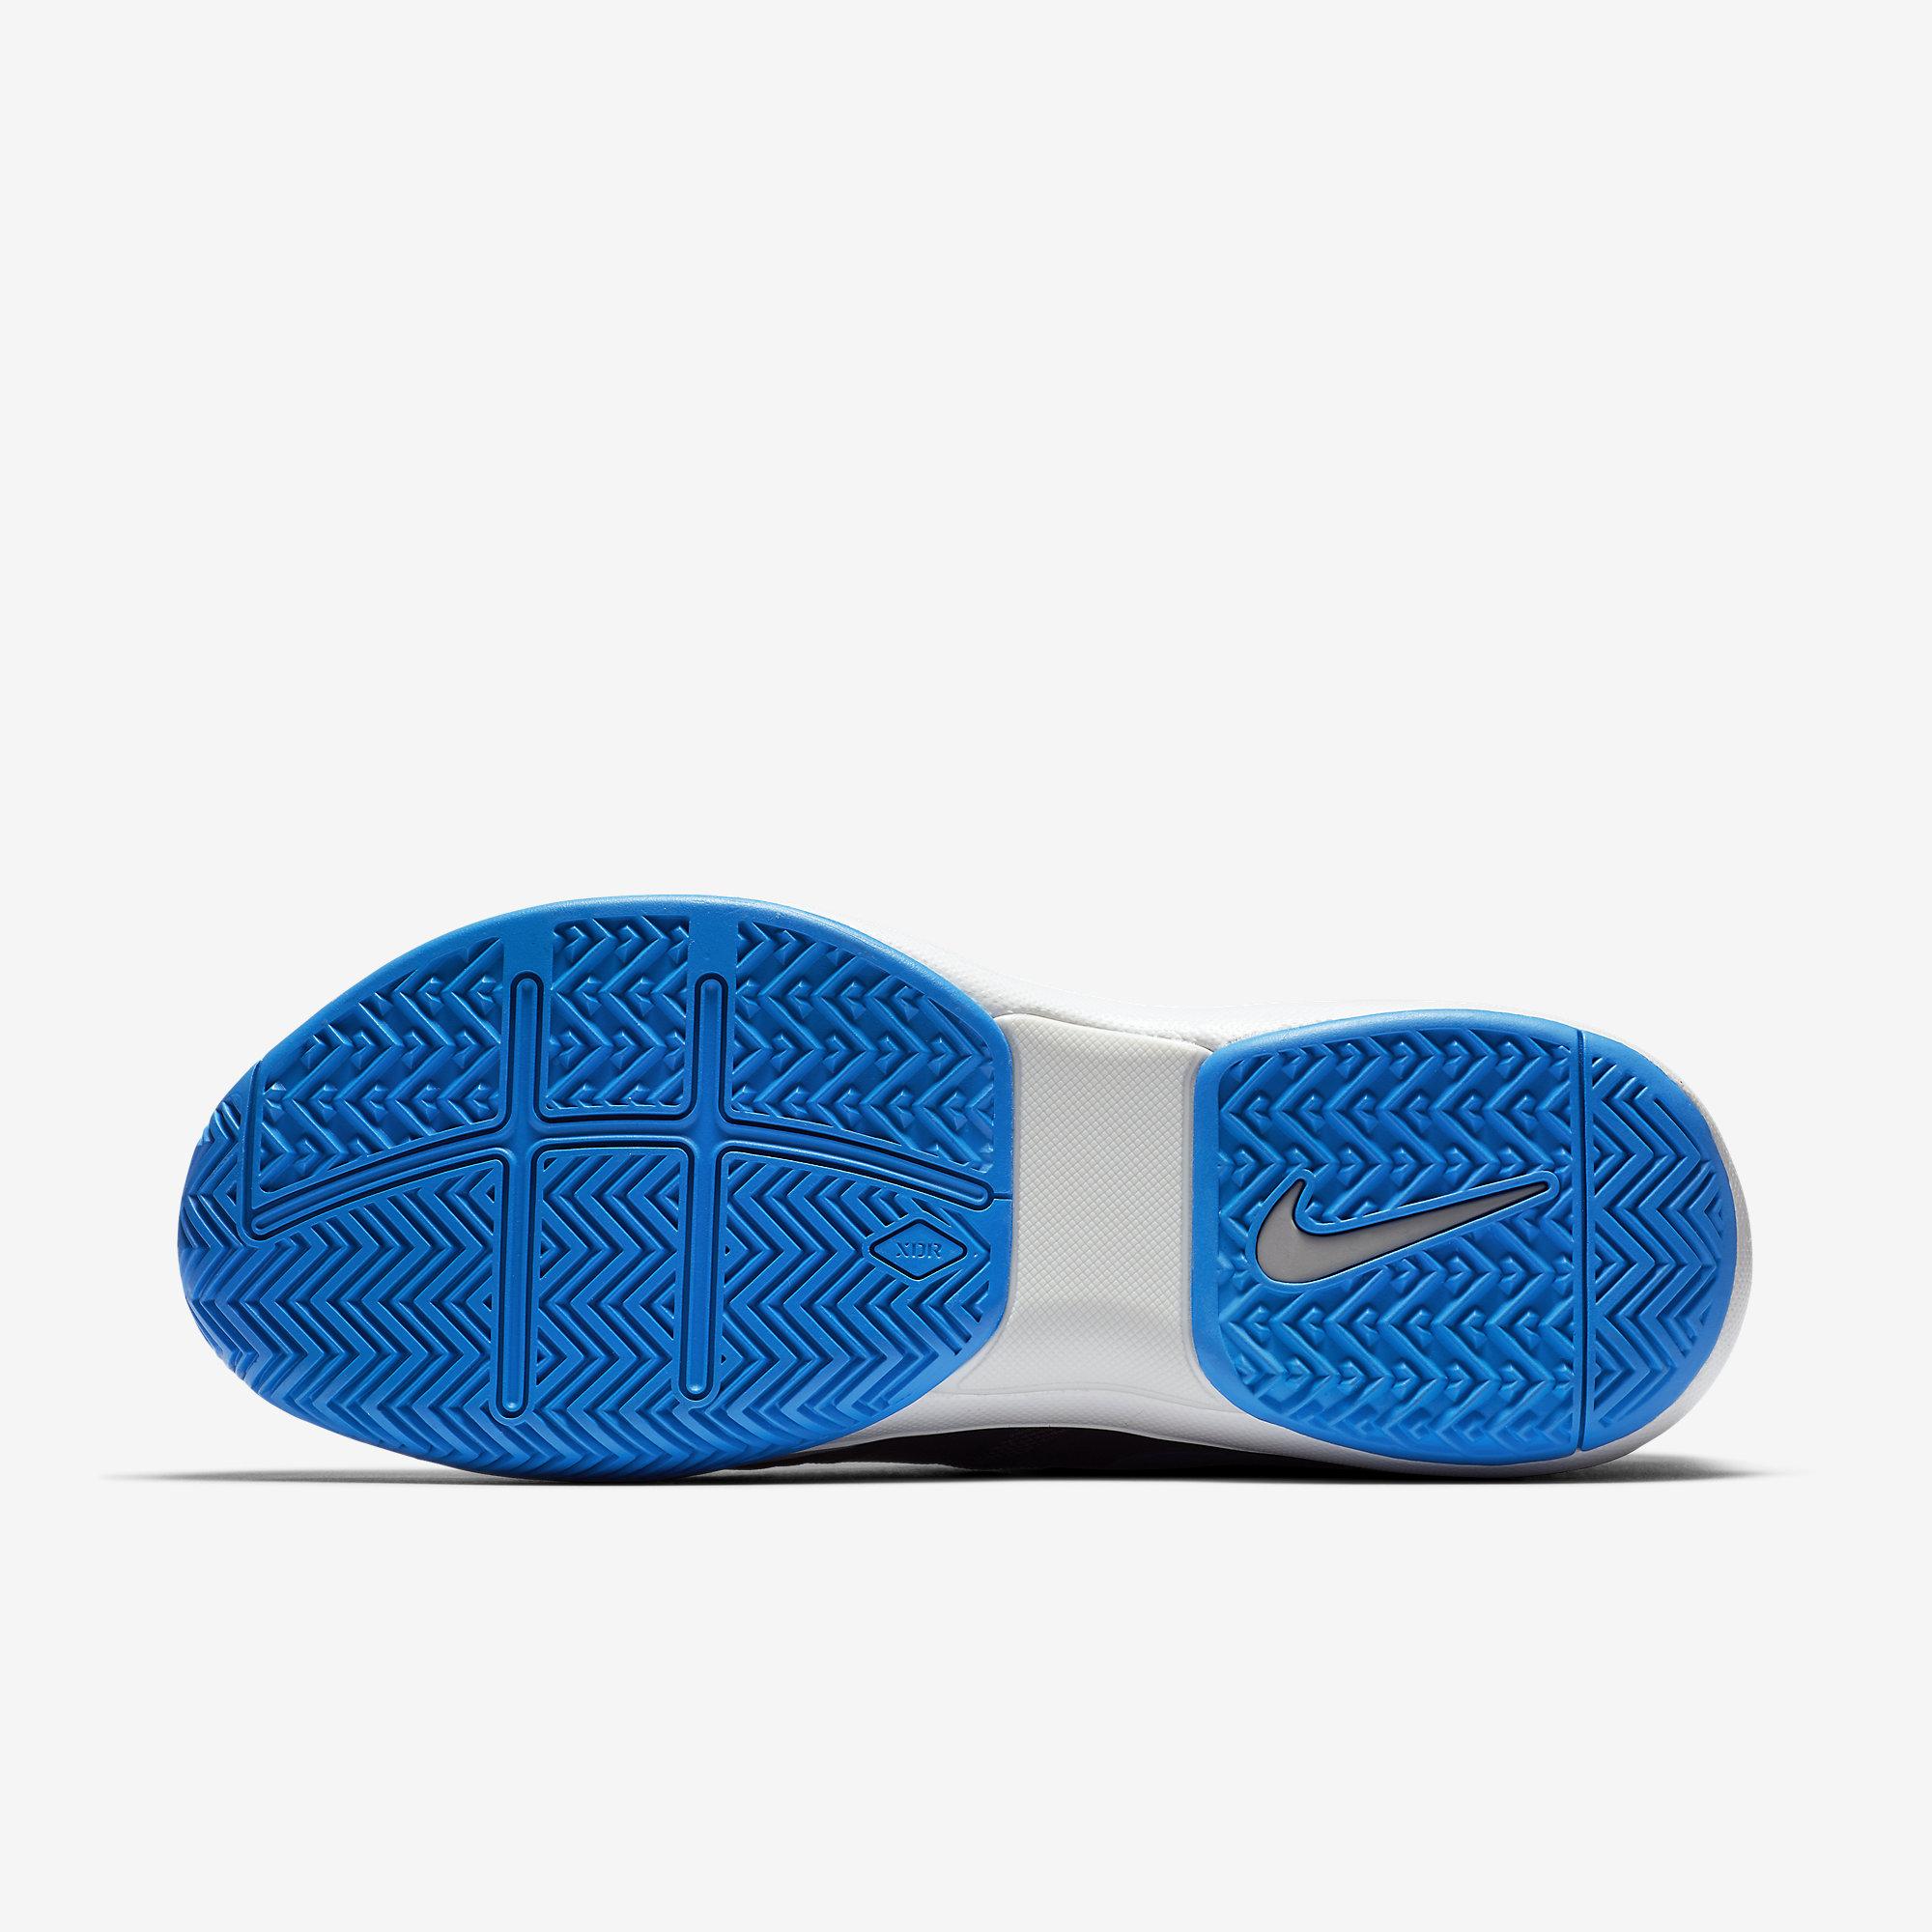 Nike Mens Air Zoom Prestige Tennis Shoes - Gridiron/Atmosphere Grey ...